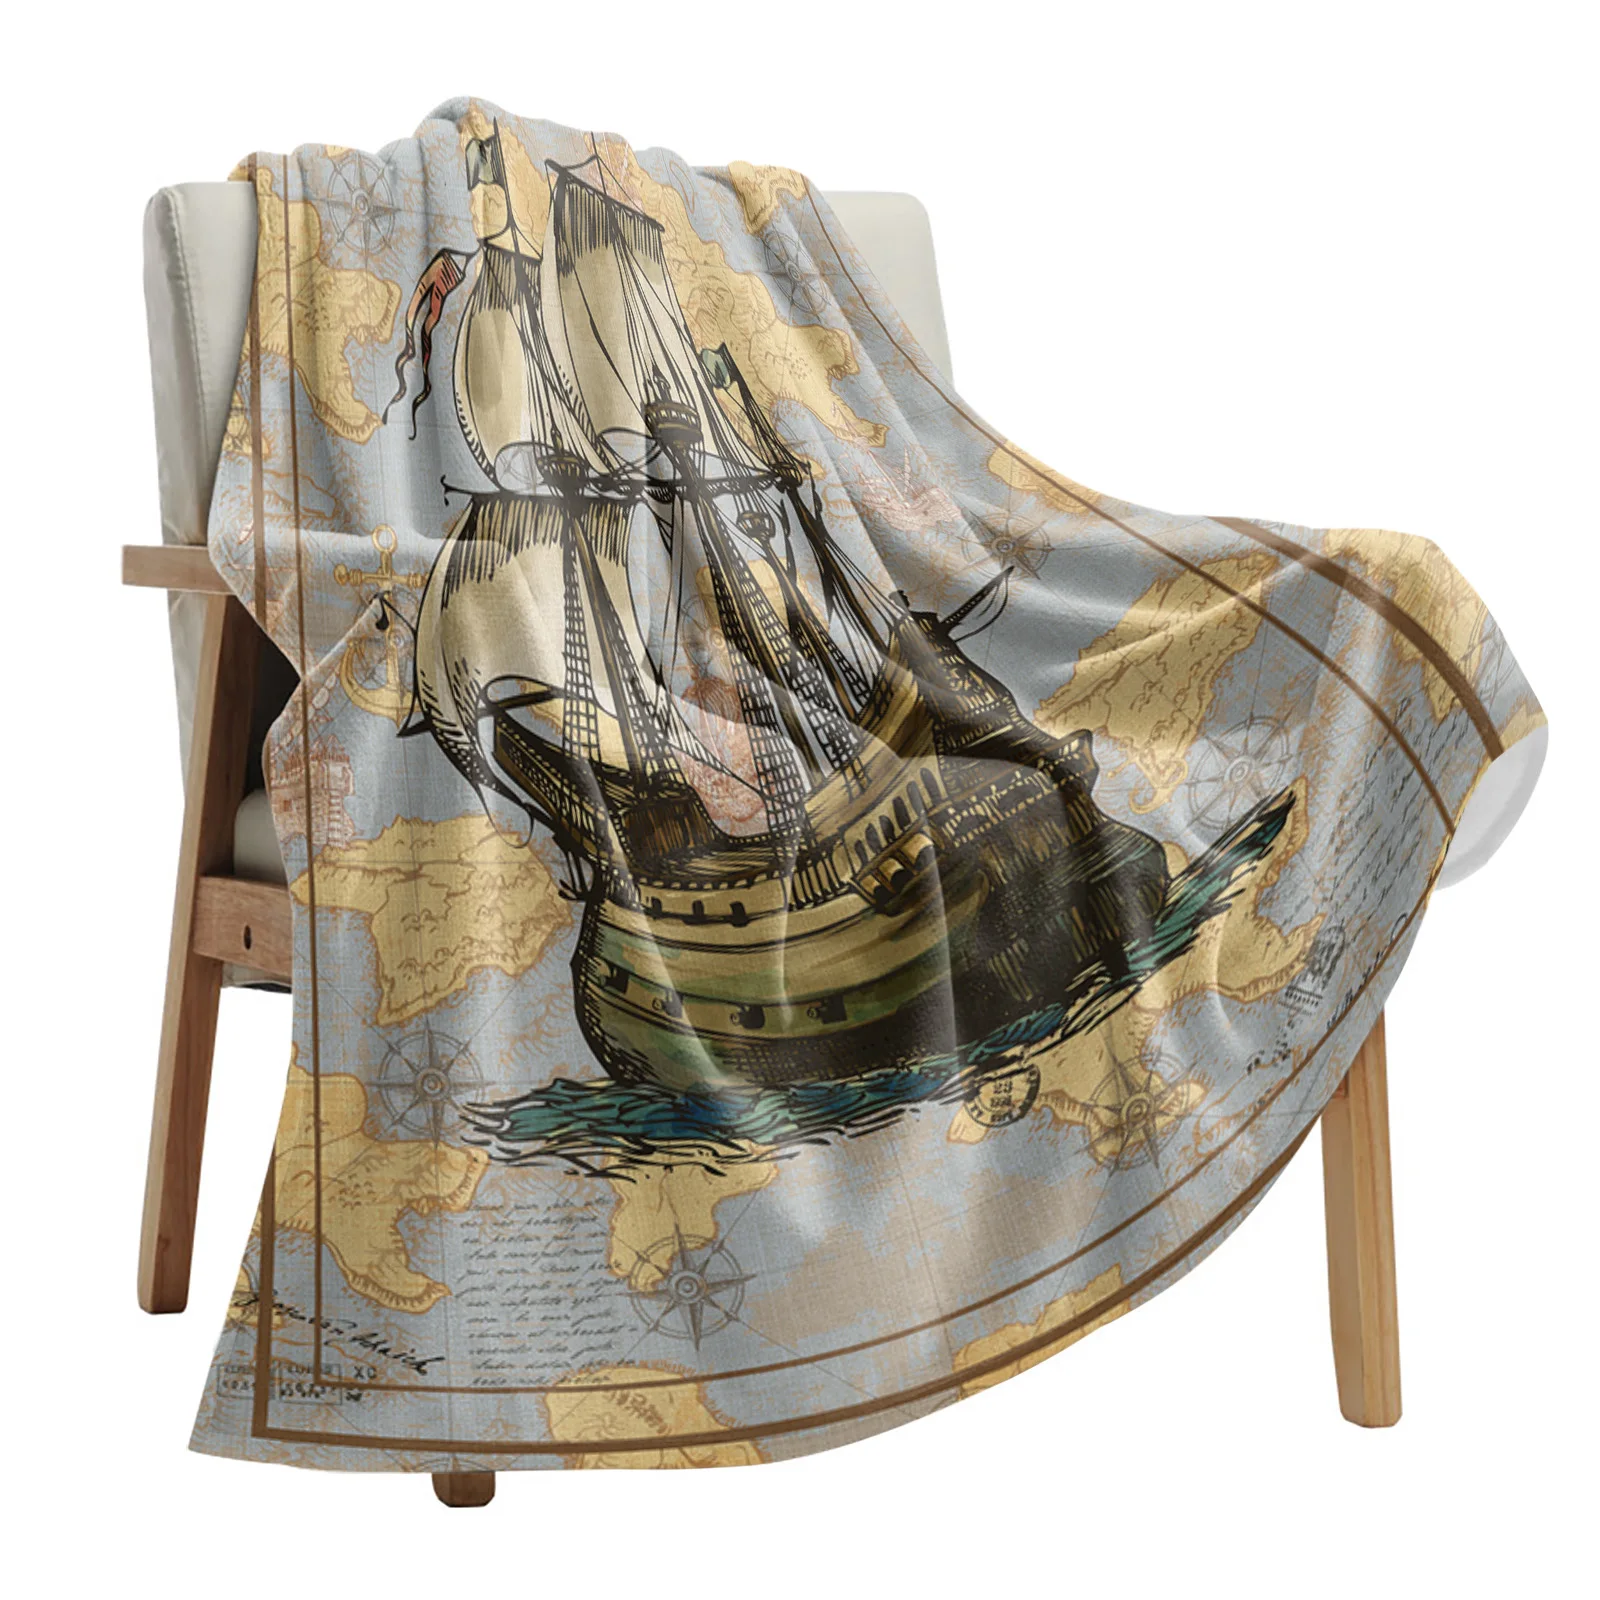 

Одеяло Фланелевое в винтажном стиле, переносное мягкое покрывало для кровати, офиса, лодки, якоря